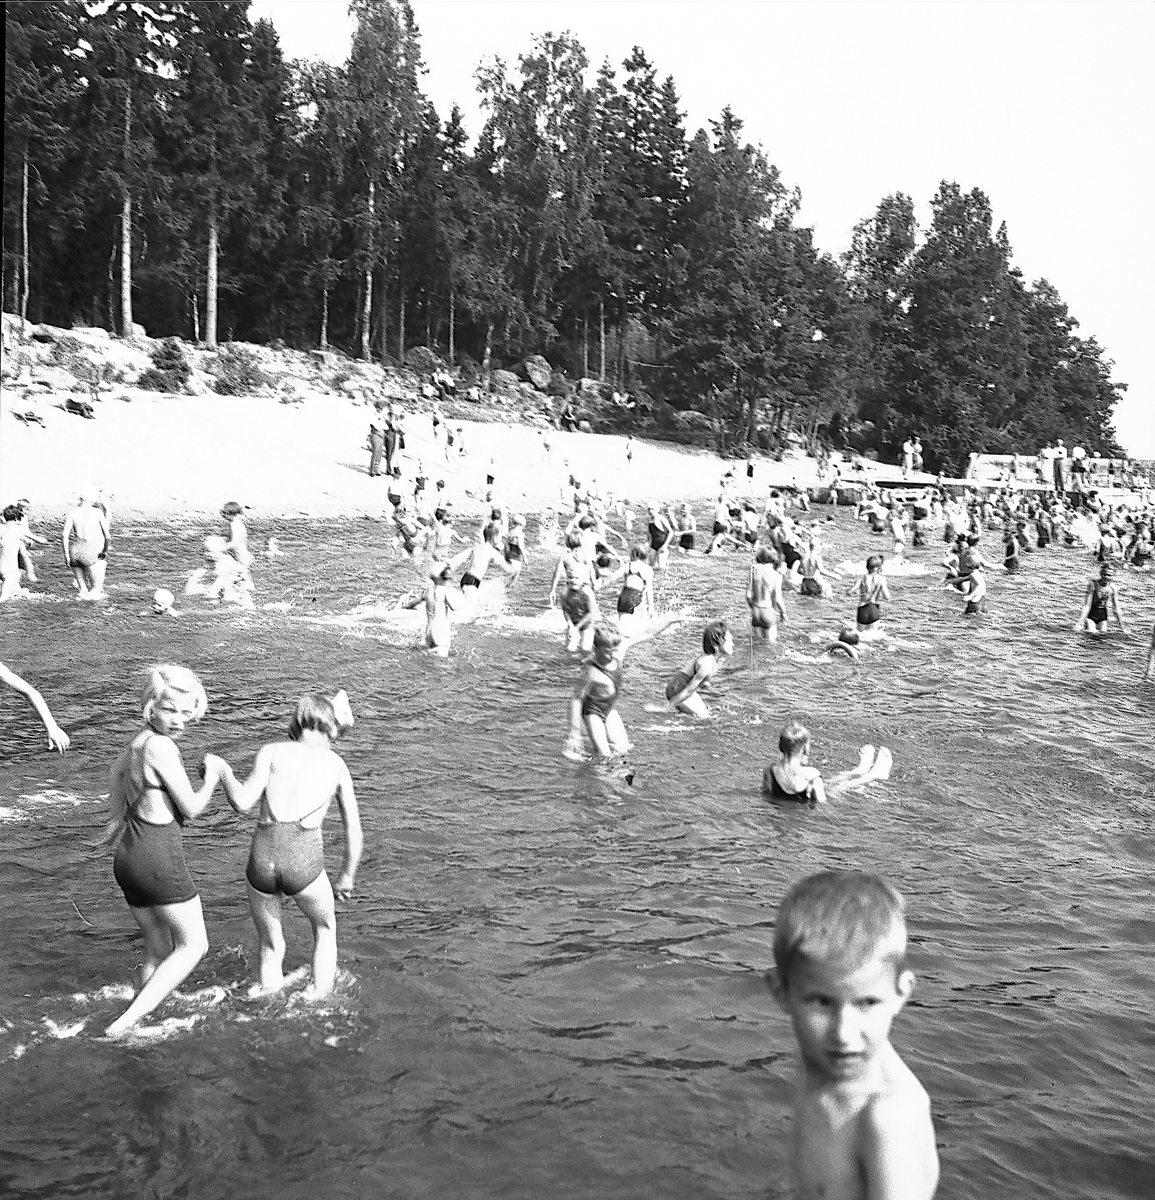 Den 23 juli 1938. Barnutflykt till Furuvik. Reportage för Gefle-Posten

